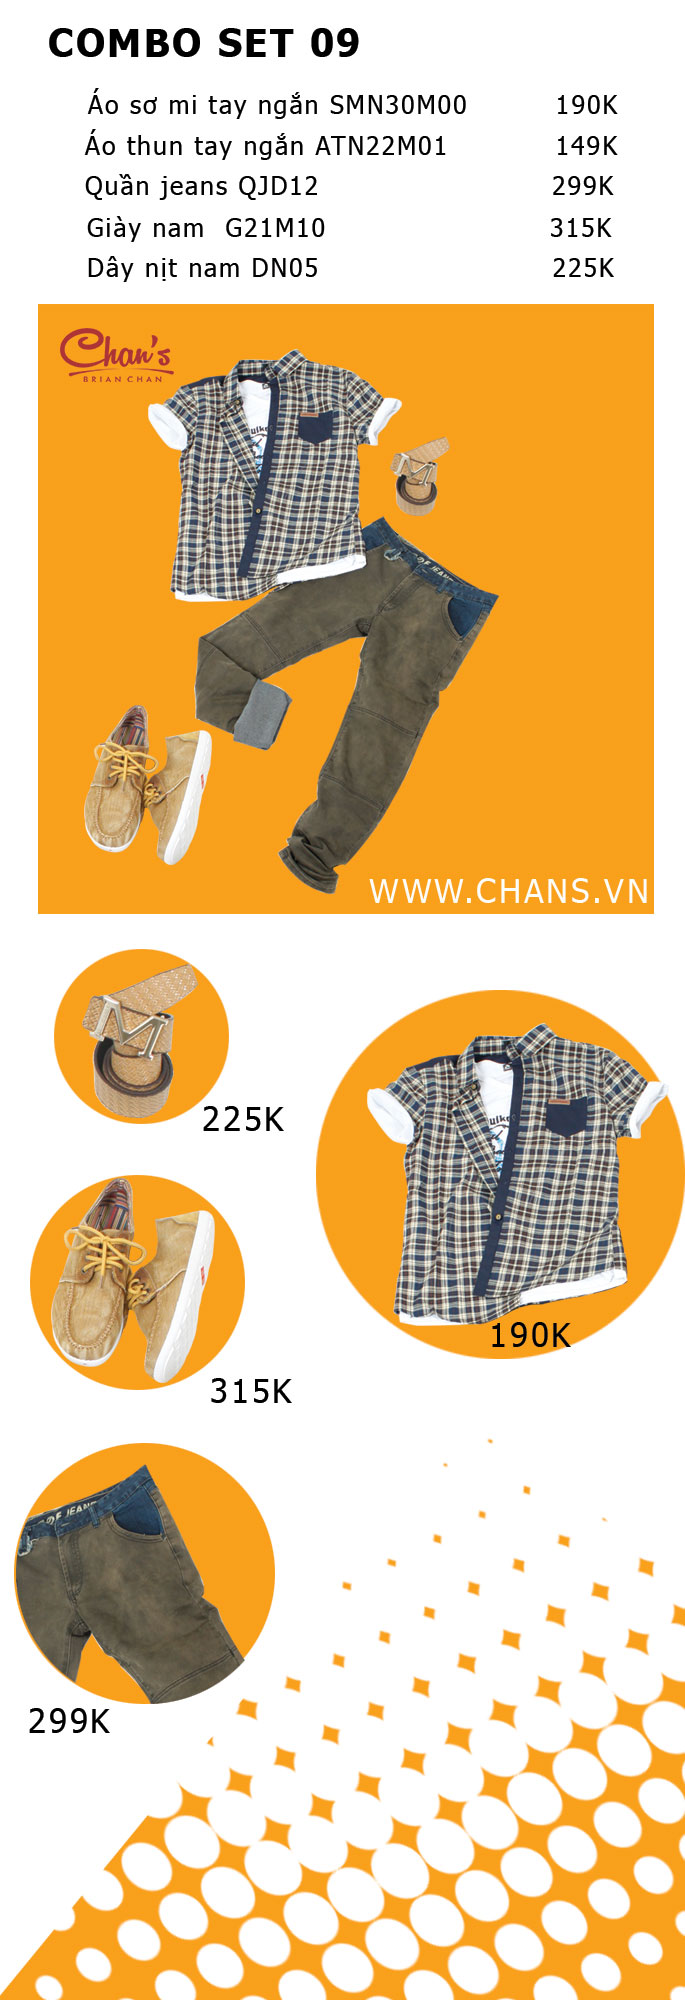 Tu Tin The Hien Phong Cach Cung Chans Fashion